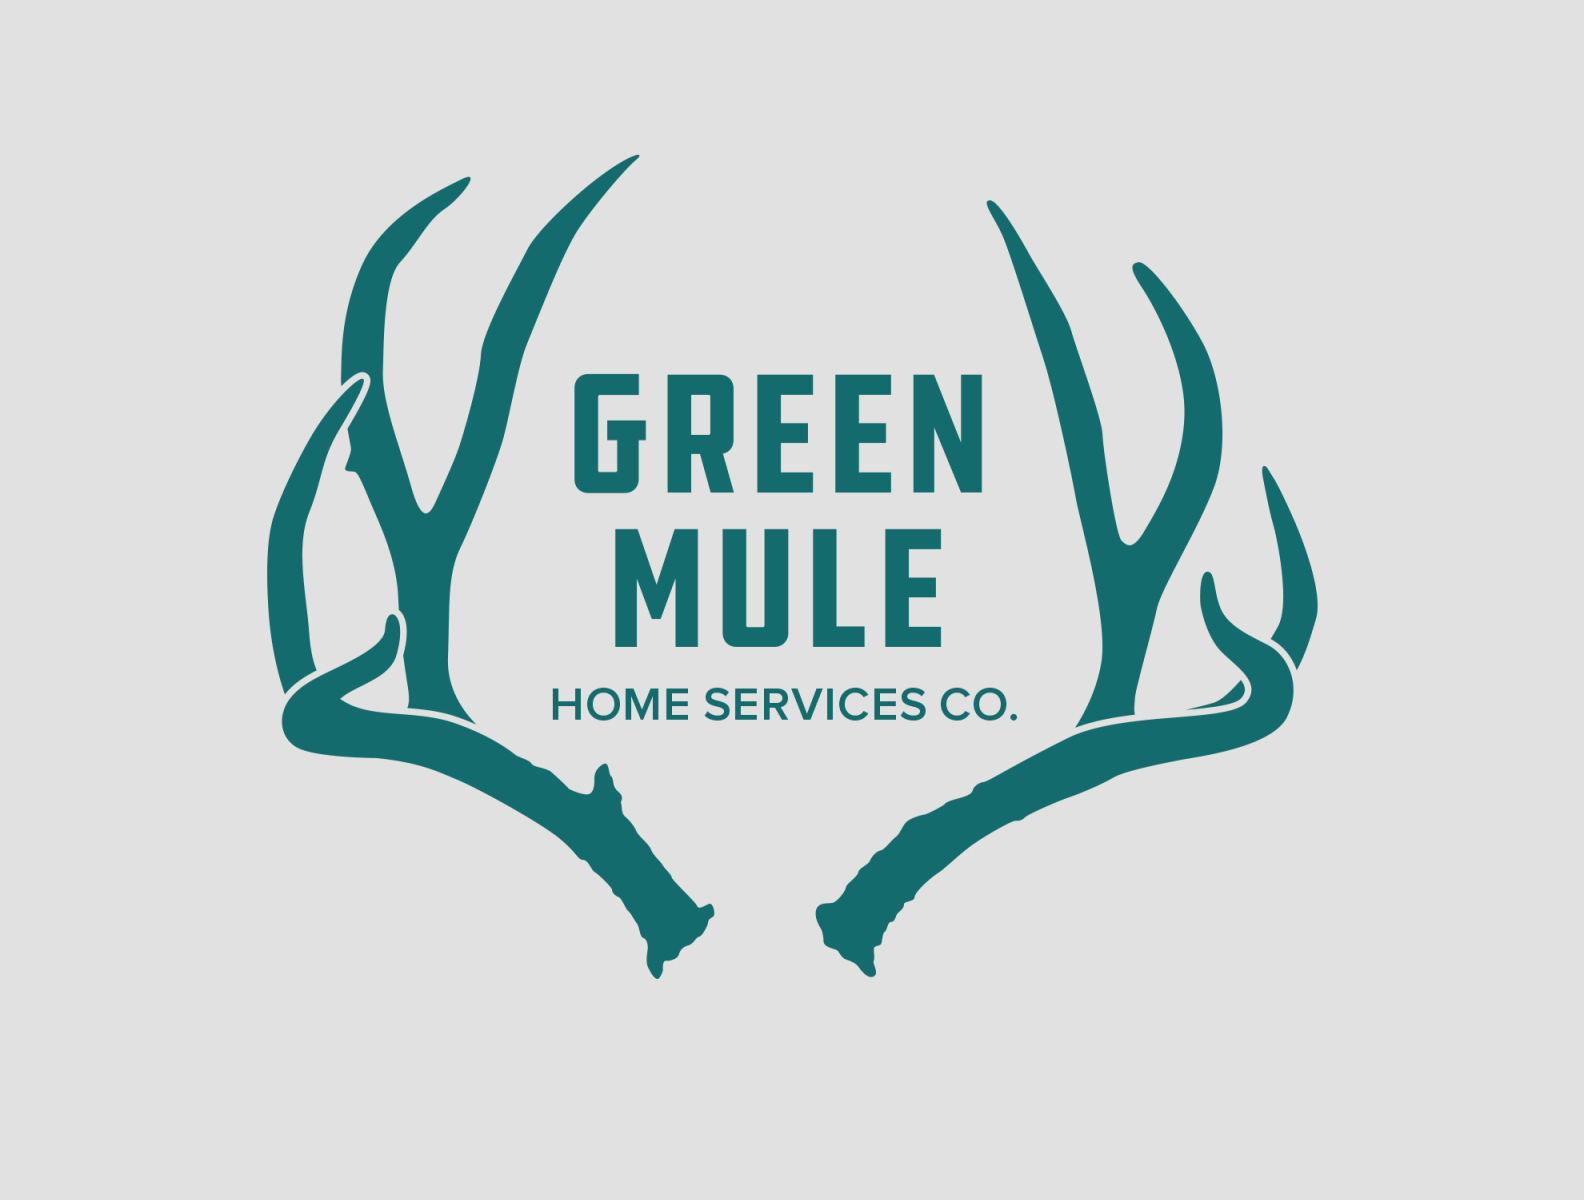 Green Mule Logo by Mollie Southard on Dribbble